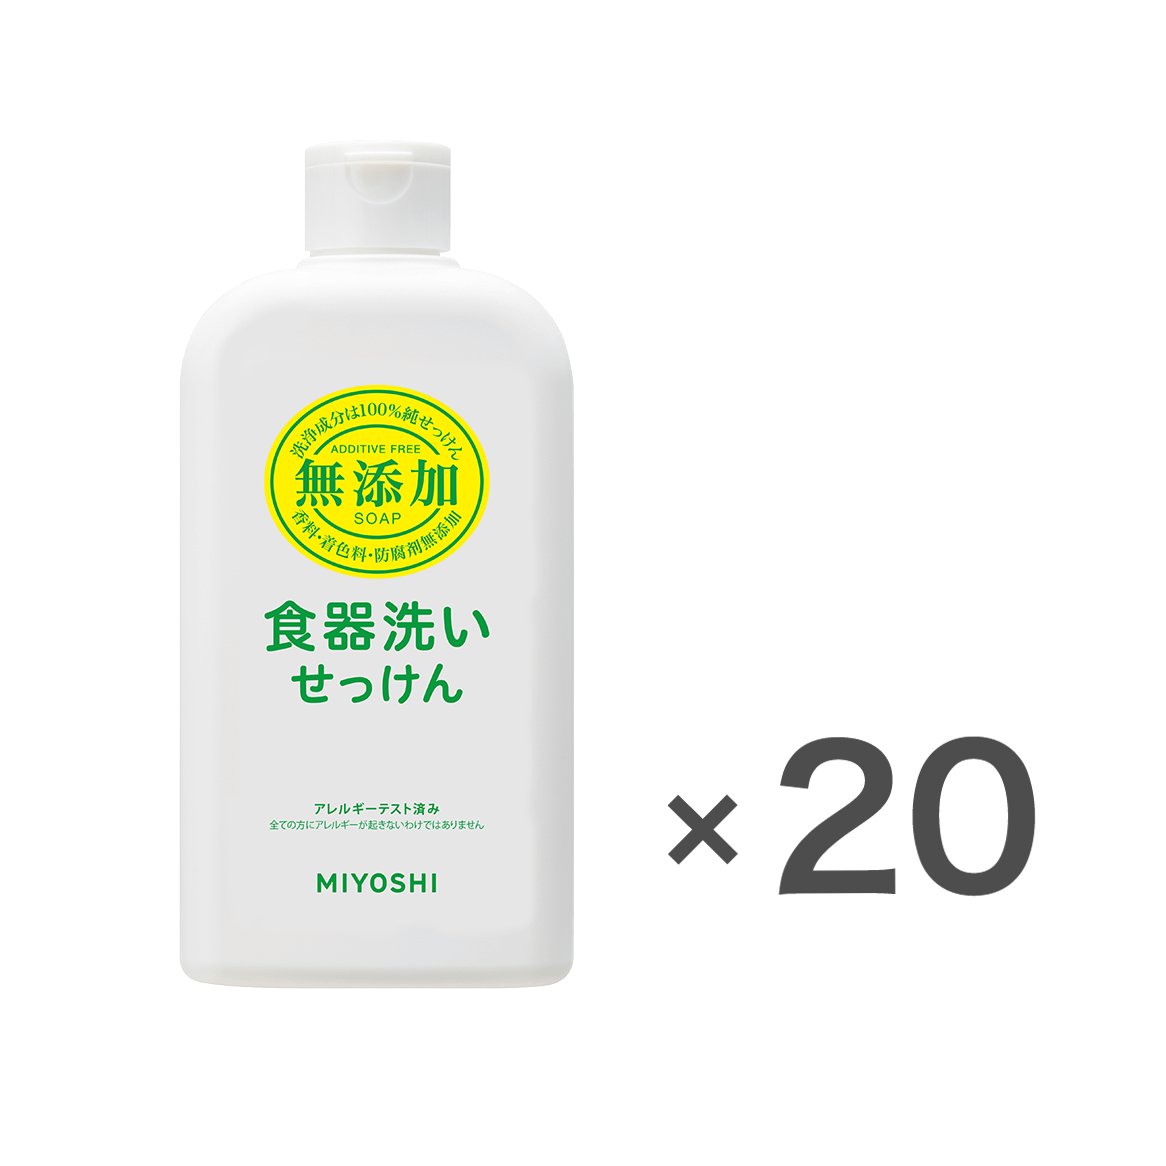 無添加食器洗いせっけん 本体ケース(370ml×20個入) – MIYOSHI SOAP